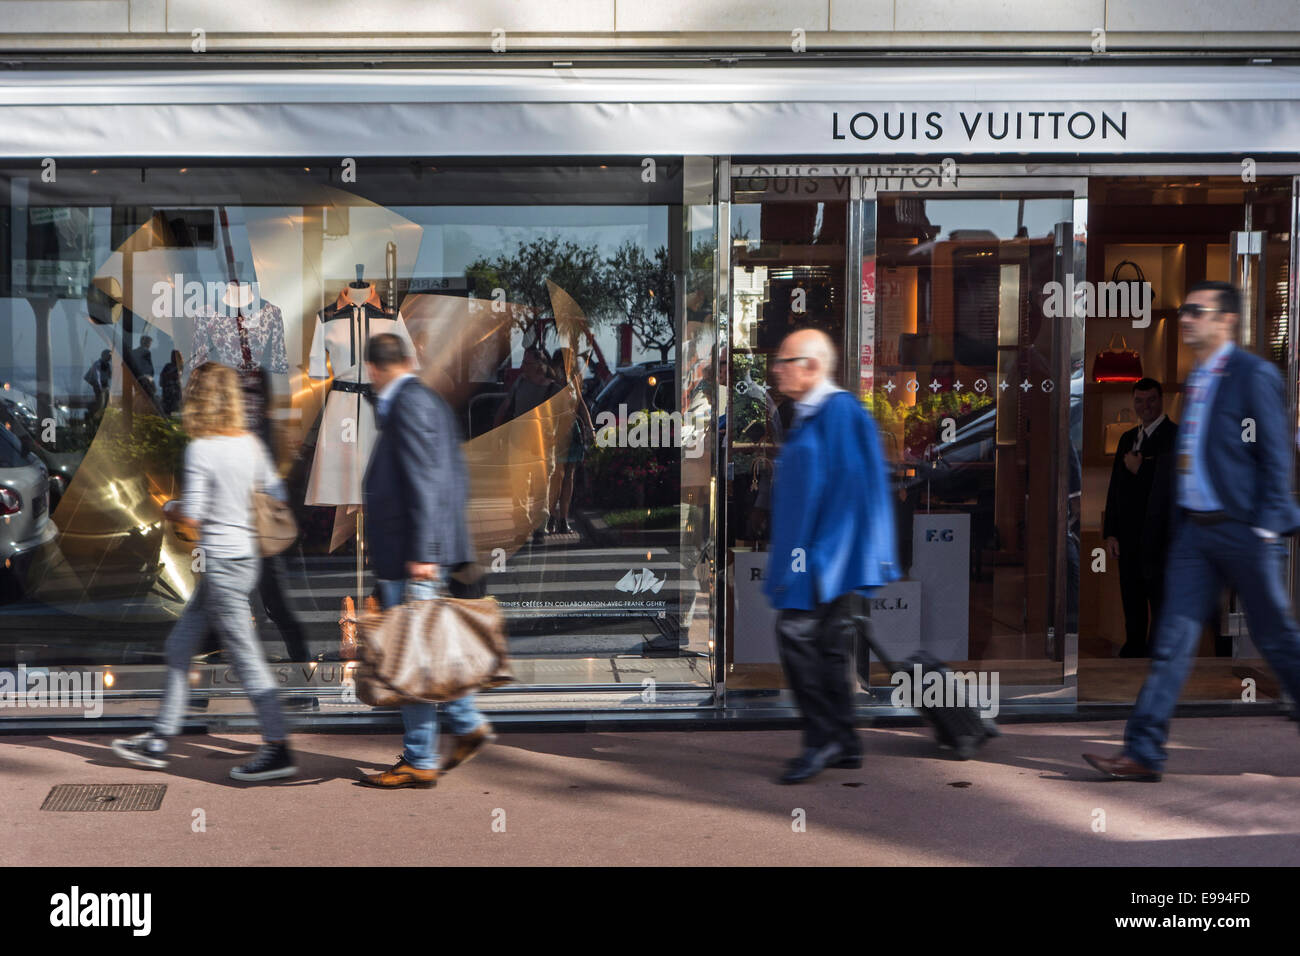 Louis Vuitton Cannes Homme store, France